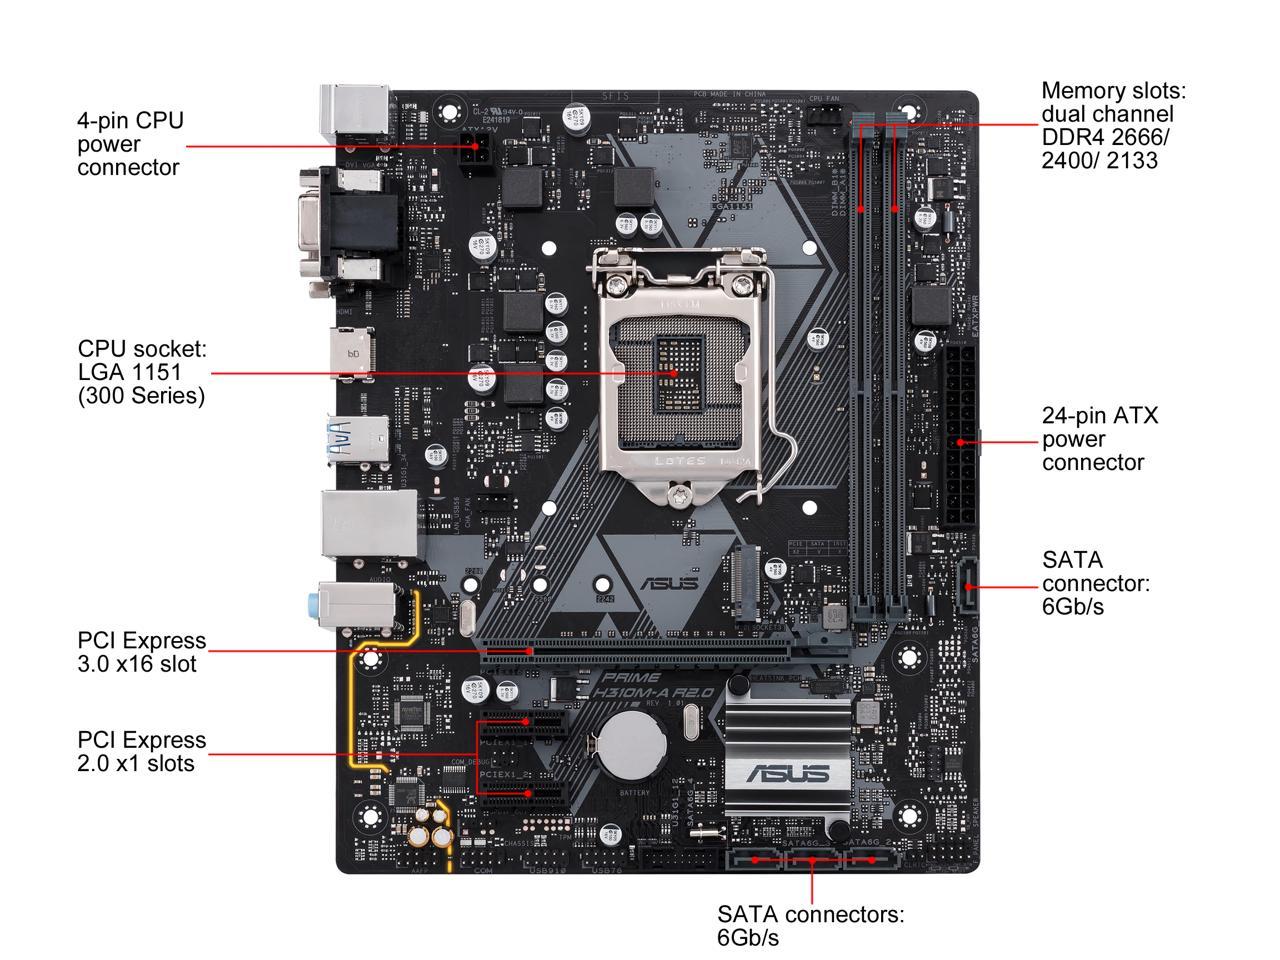 Asus Prime H310M-A R2.0/CSM Desktop Motherboard - Intel Chipset - Socket H4 LGA-1151